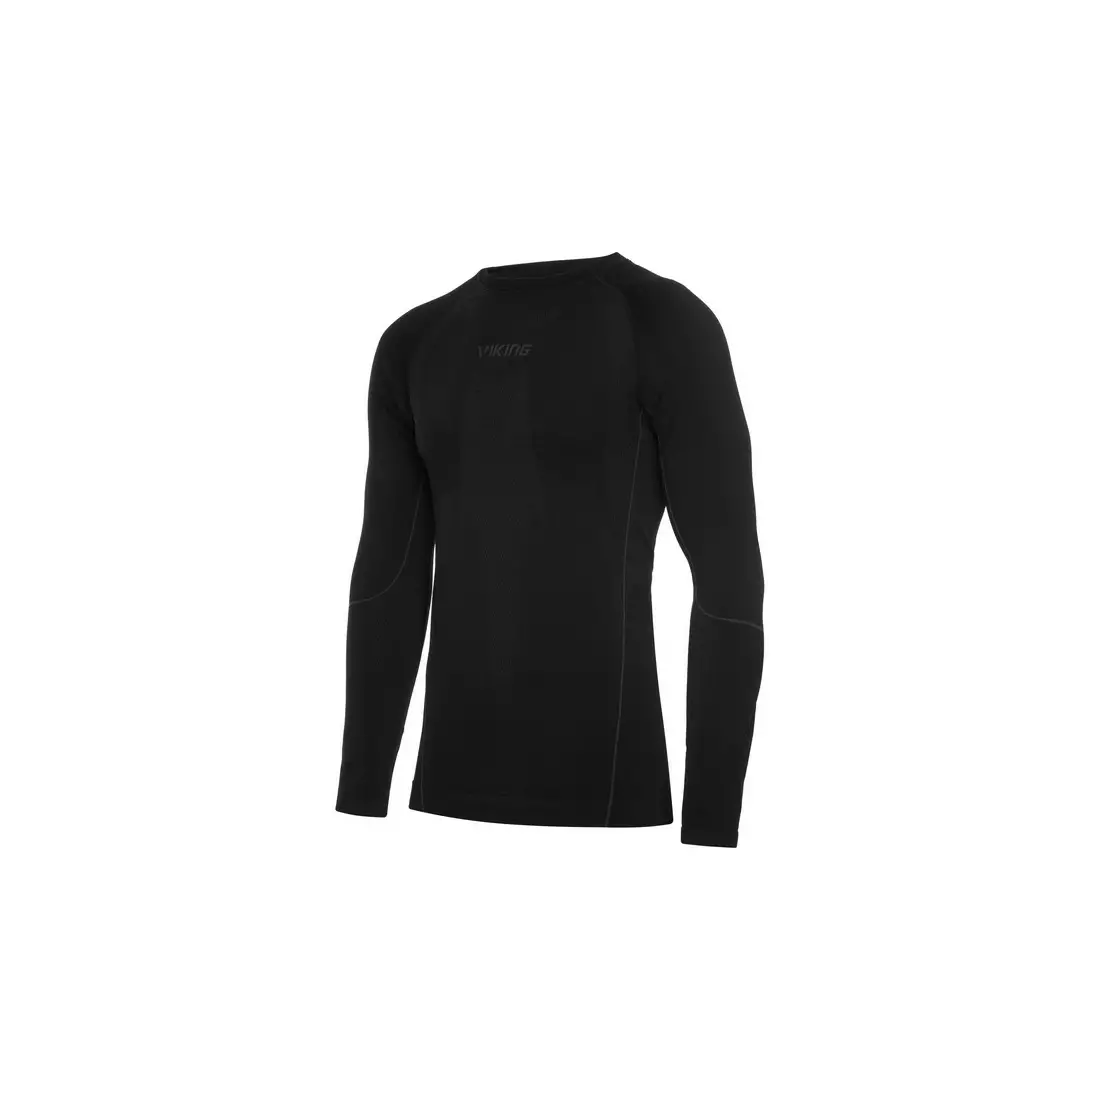 VIKING pánska súprava termoaktívneho spodného prádla tričko + legíny + trenírky Eiger 500/21/2080/09